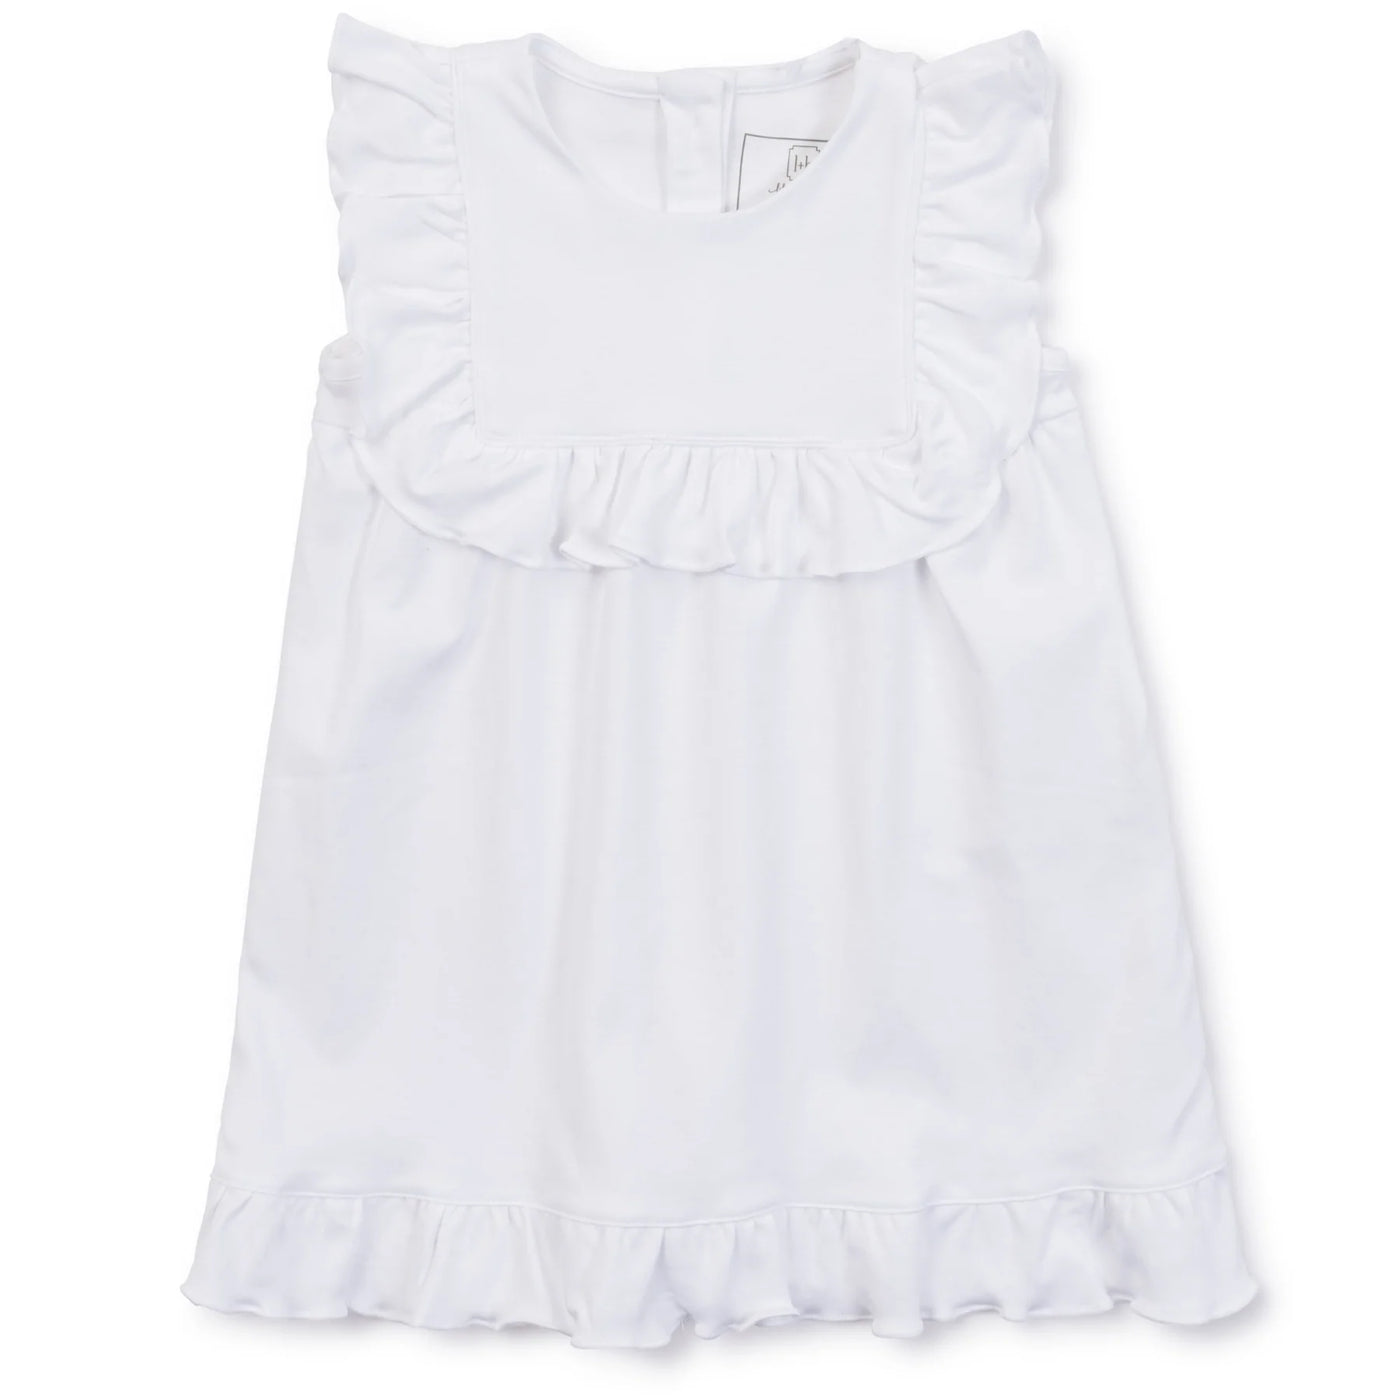 Piper Dress - White - Breckenridge Baby